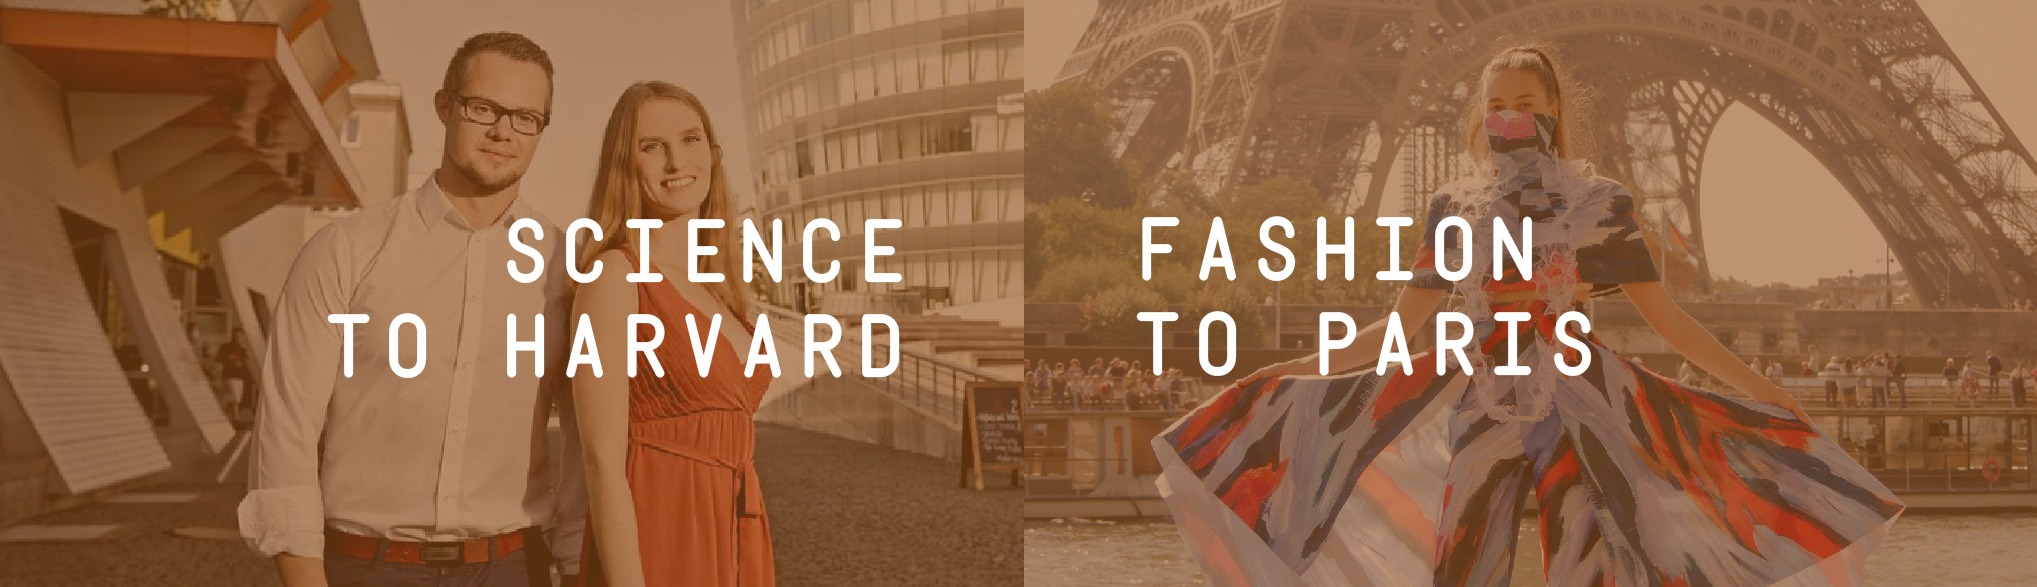 Science to Harvard, Fashion to Paris